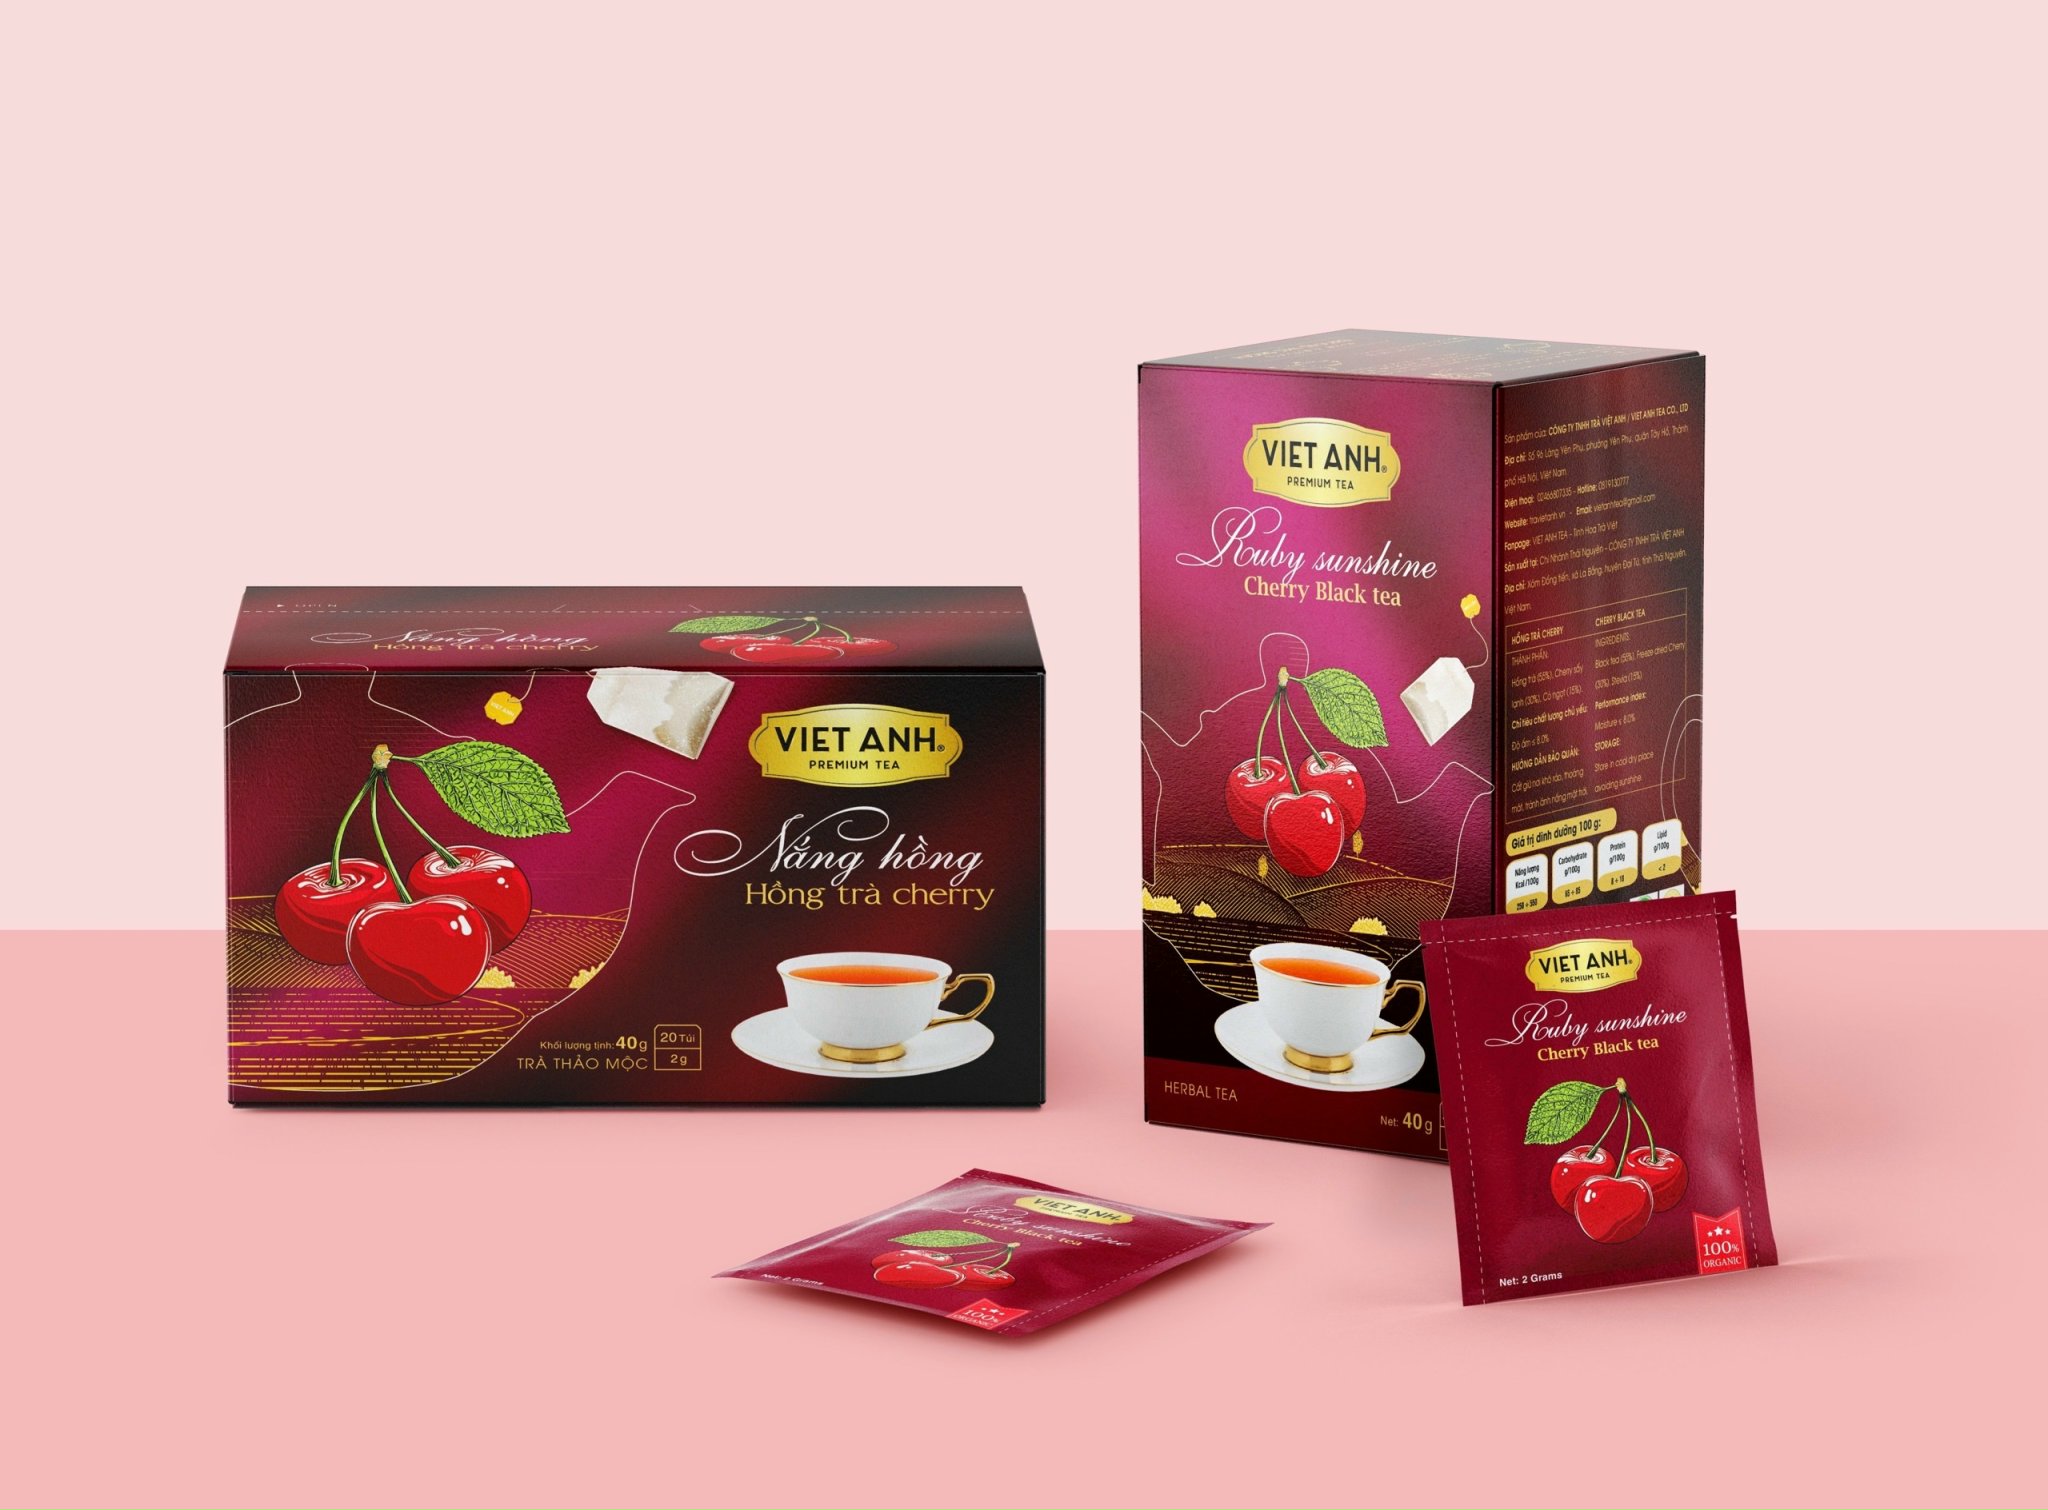 Trà Cherry nắng hồng túi lọc 40g - Trà Việt Anh